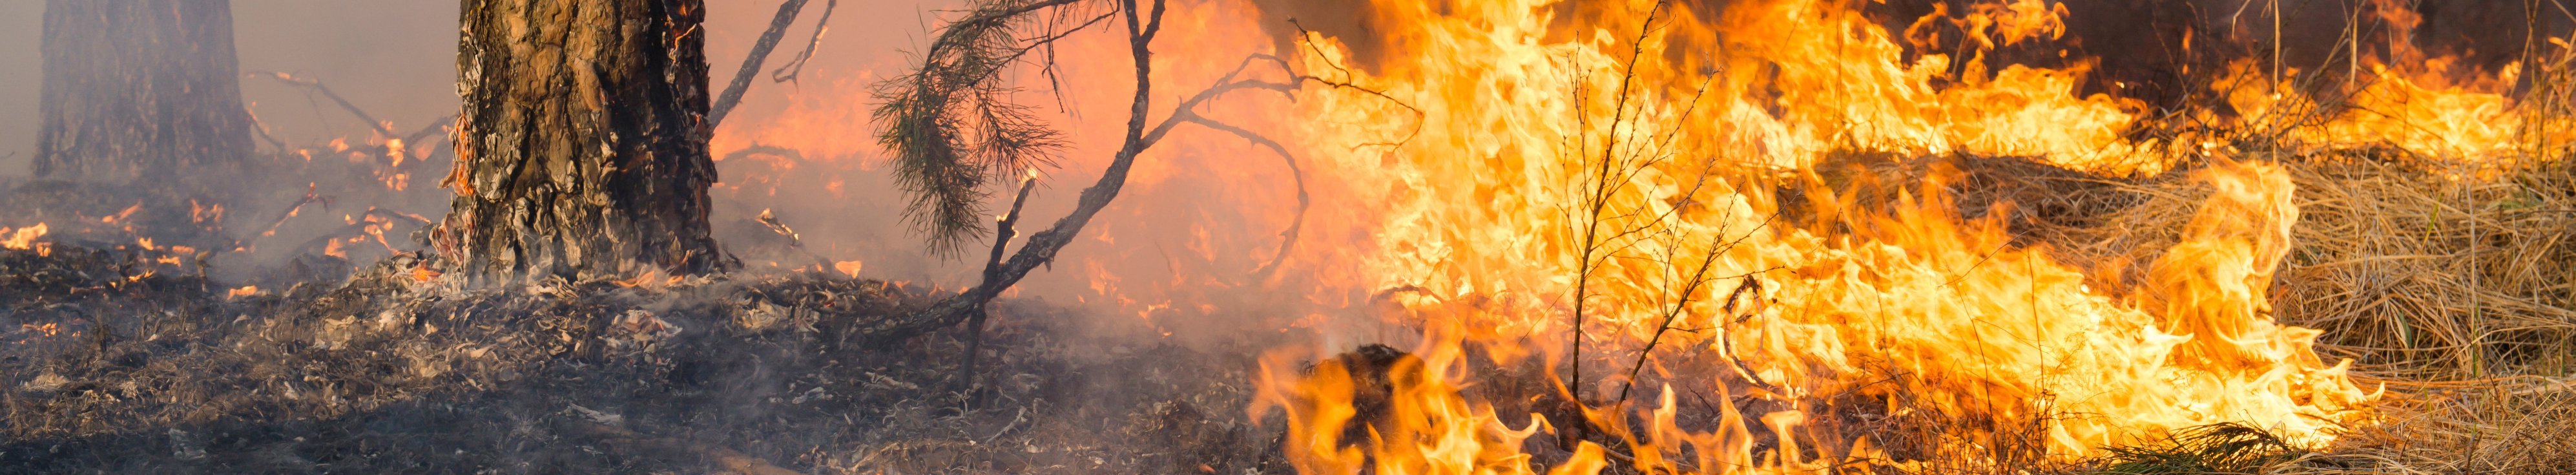 Flammen eines Bodenfeuers im Wald